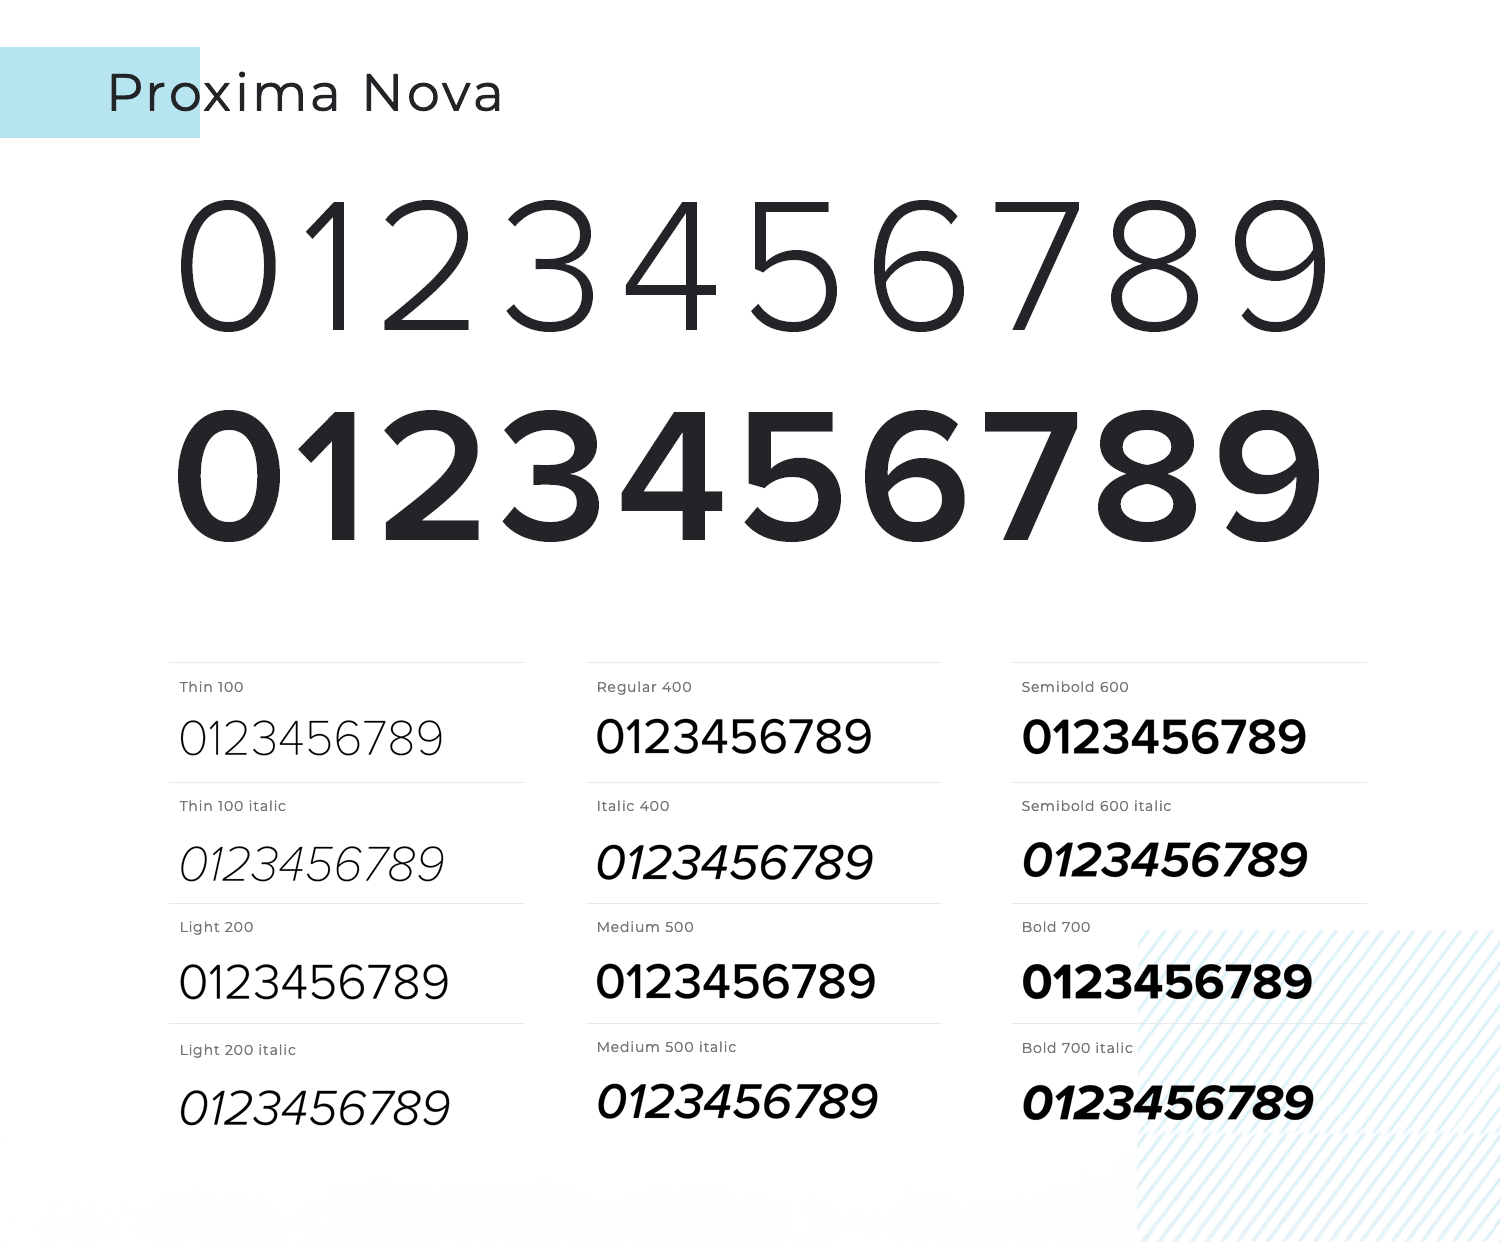 proxima nova number font